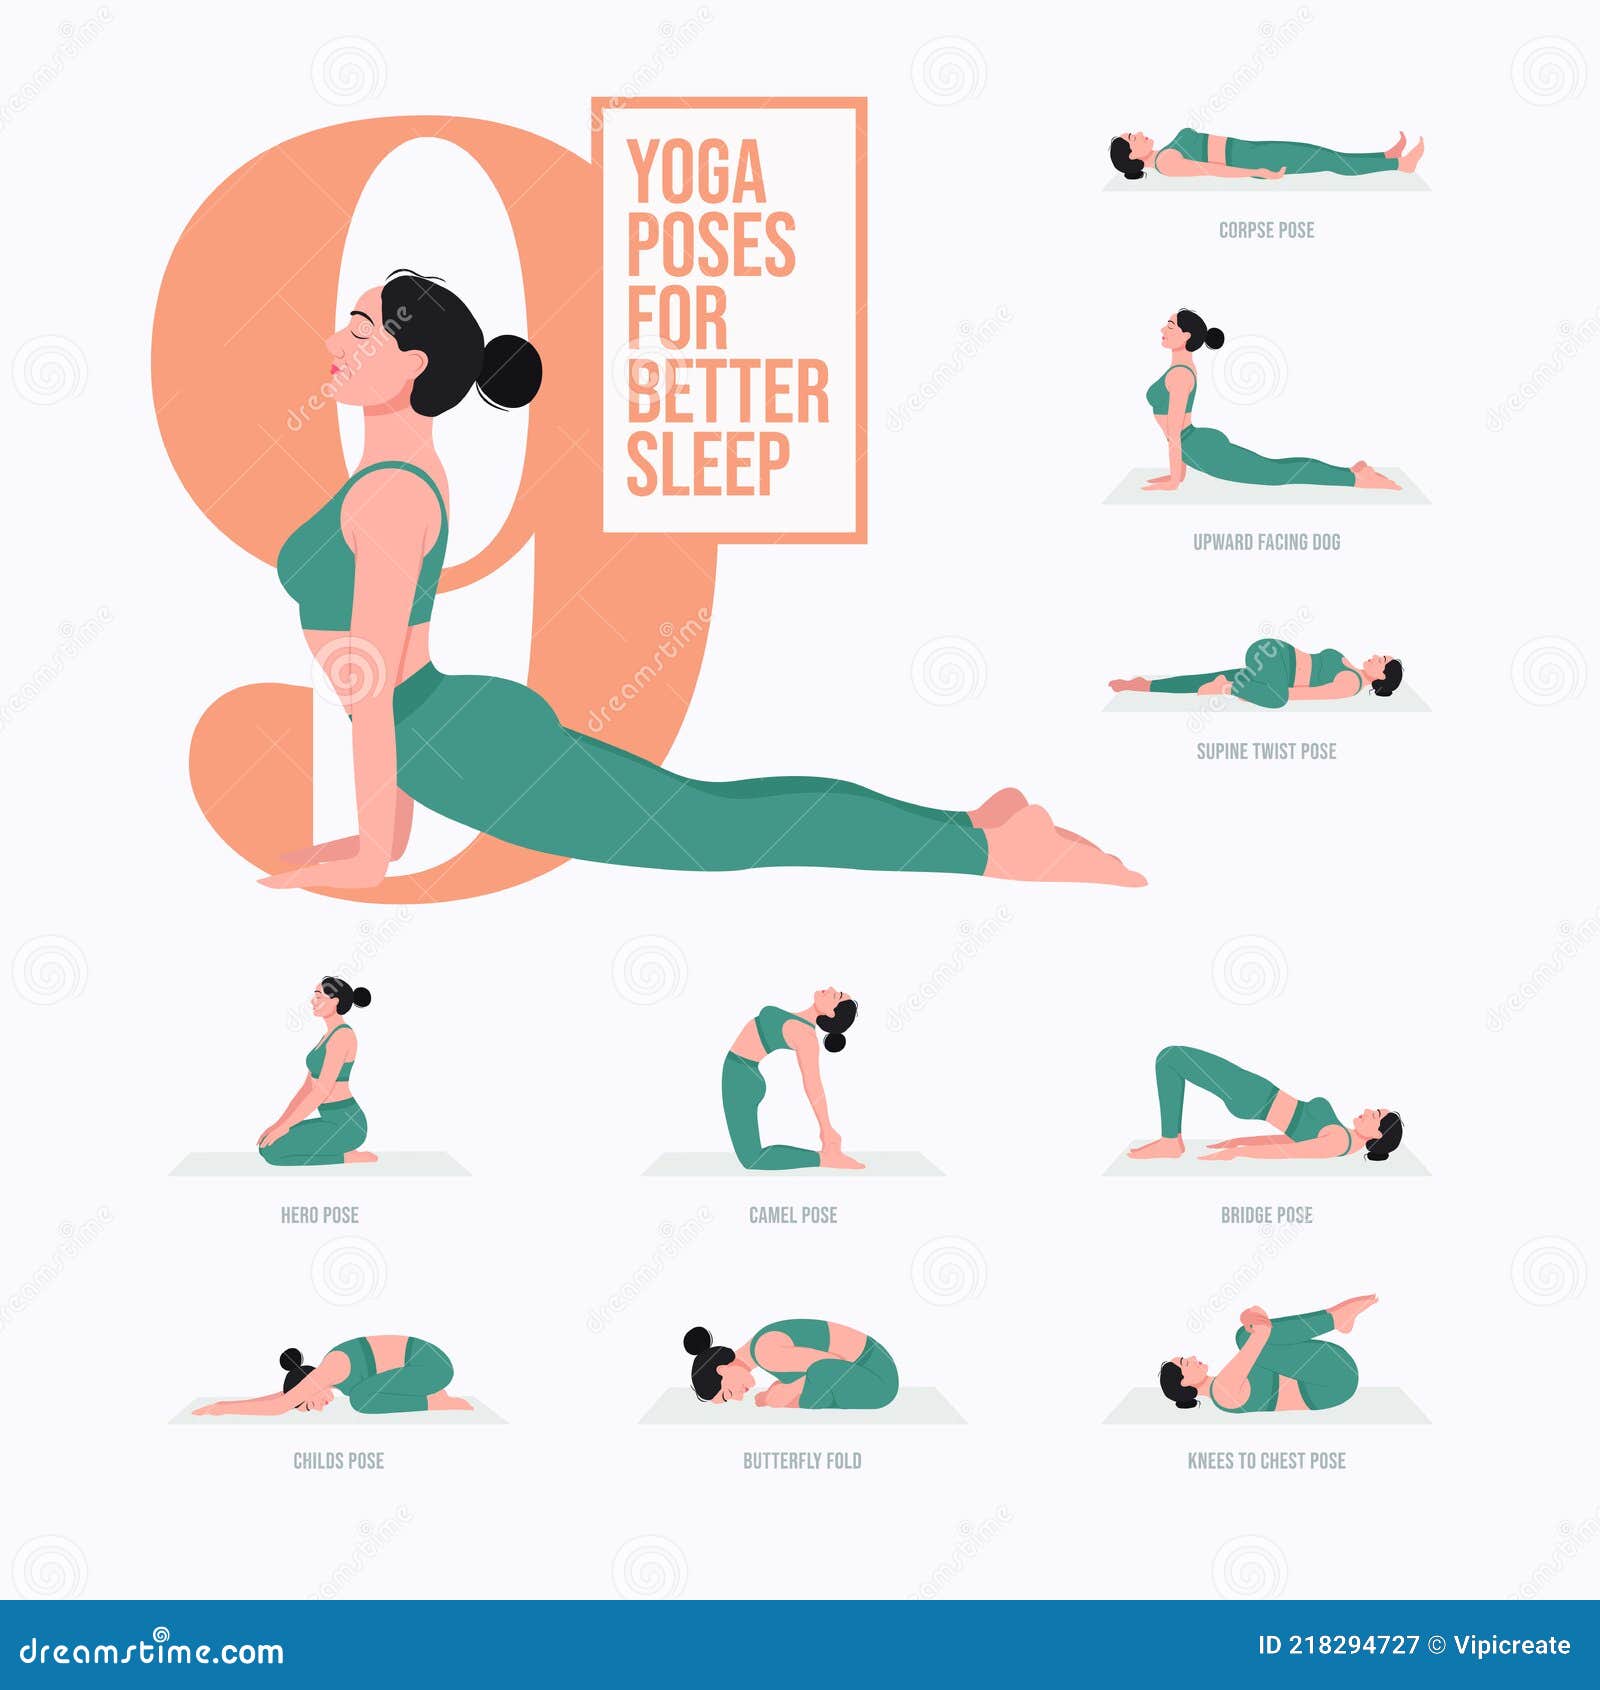 Yoga For Sleep - A Short Sequence - Yoga with Kassandra